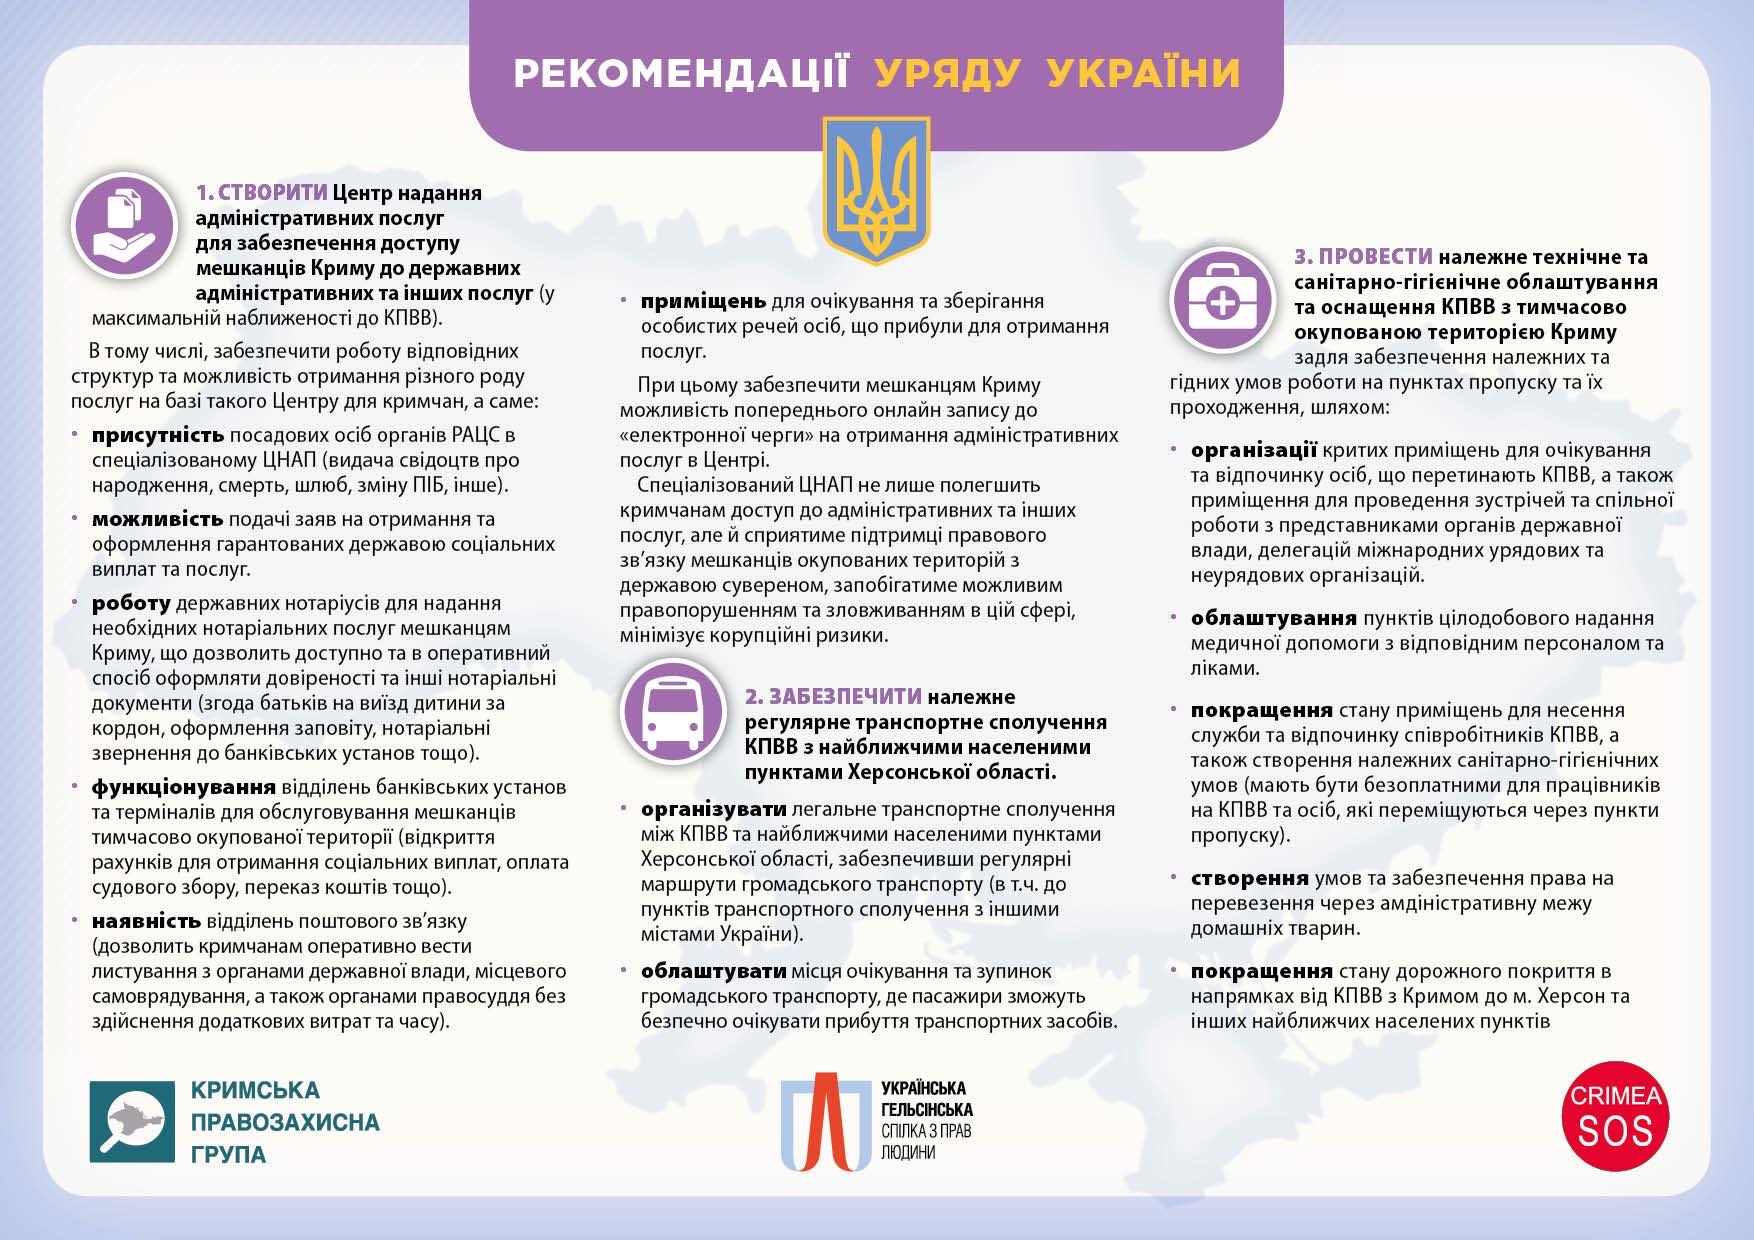 Правозахисники вимагають від уряду України провести благоустрій КПВВ на адмінкордоні з Кримом